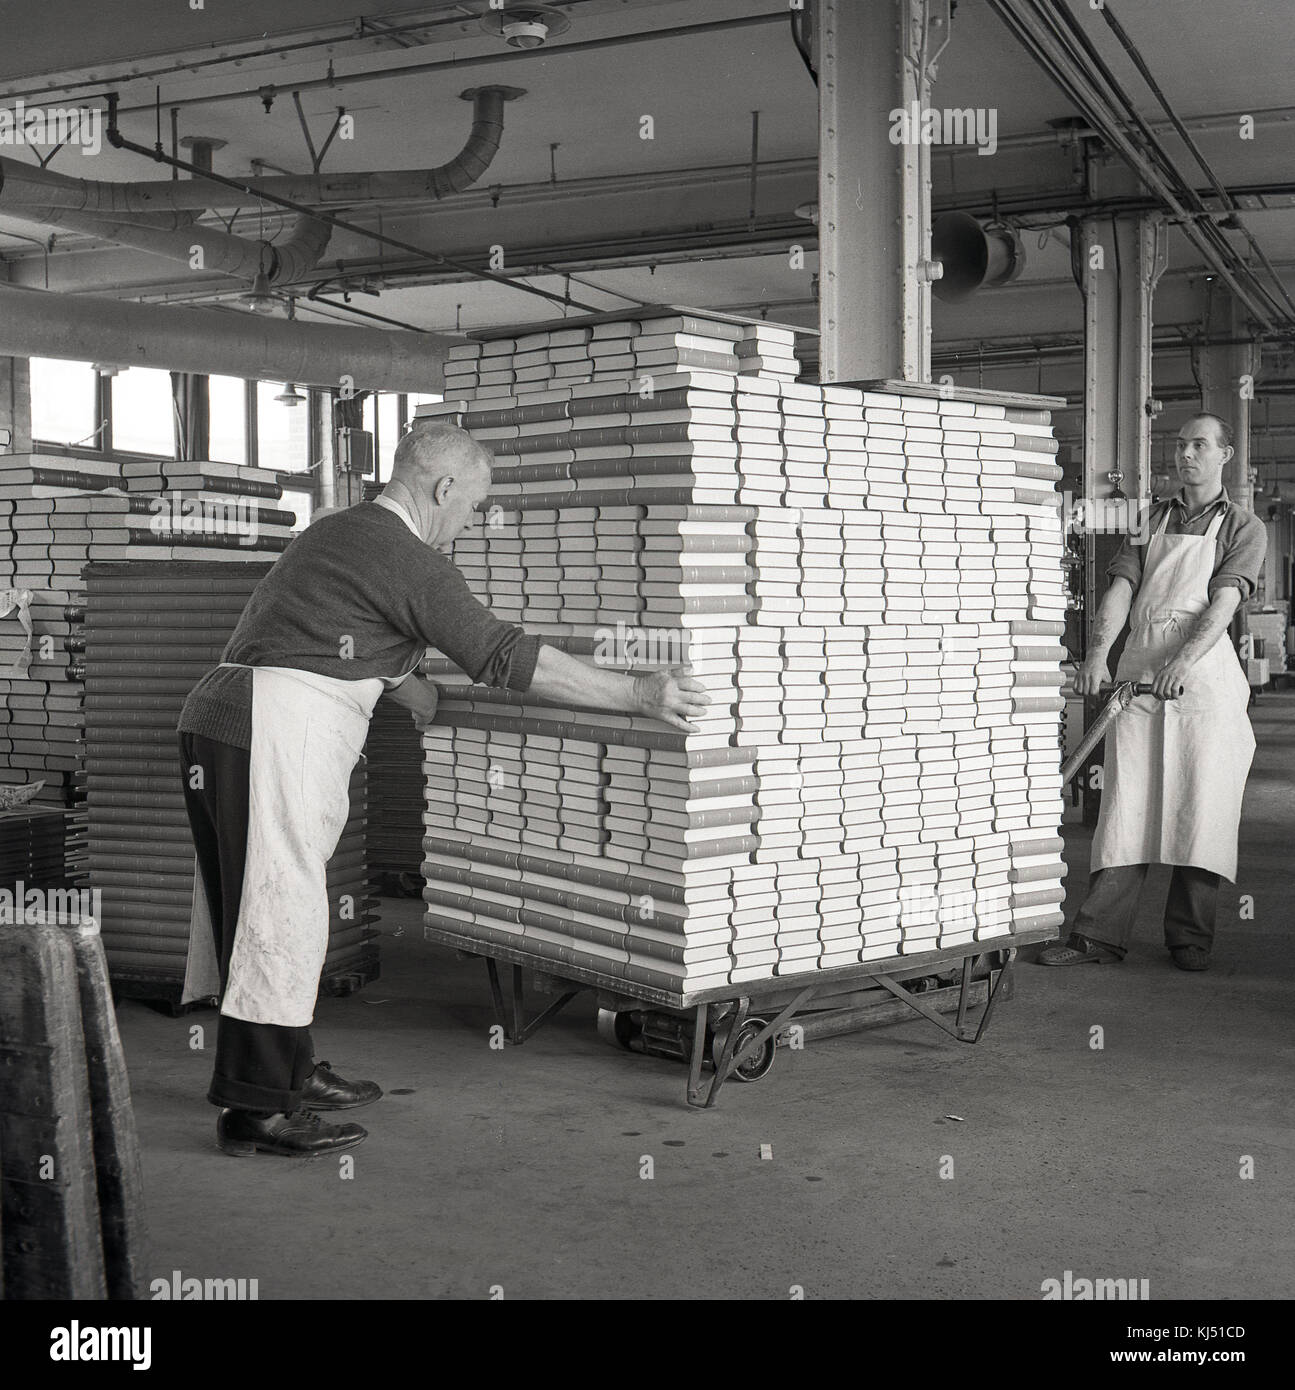 1950, historische, zwei männliche Arbeitnehmer Schürzen tragen in einer industriellen Anlage oder Lager, eine große und schwere Last von gebundene Bücher auf einem Transportwagen, England, UK. Stockfoto